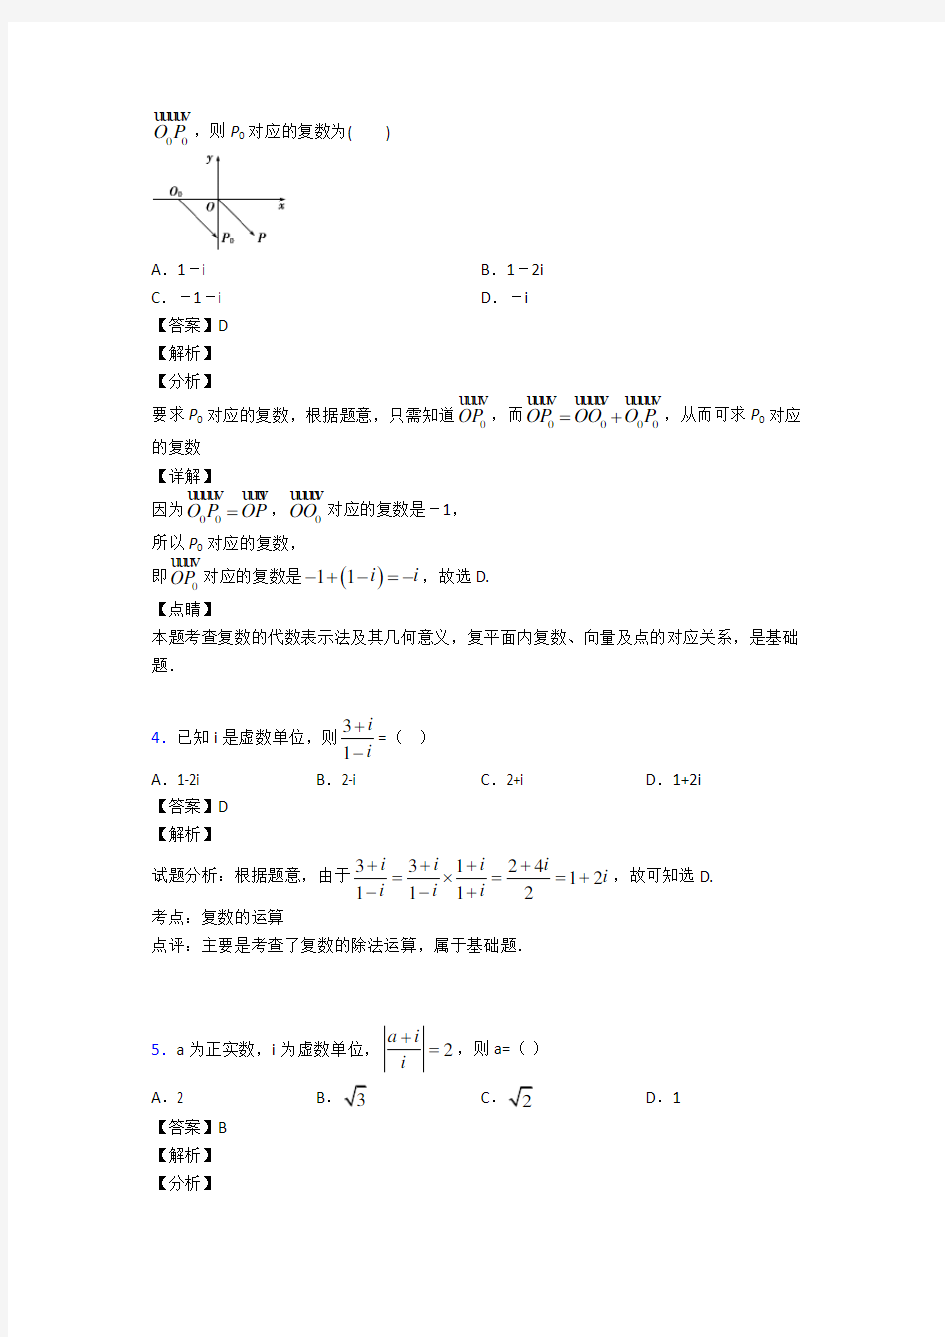 高考数学压轴专题上海备战高考《复数》单元汇编及解析